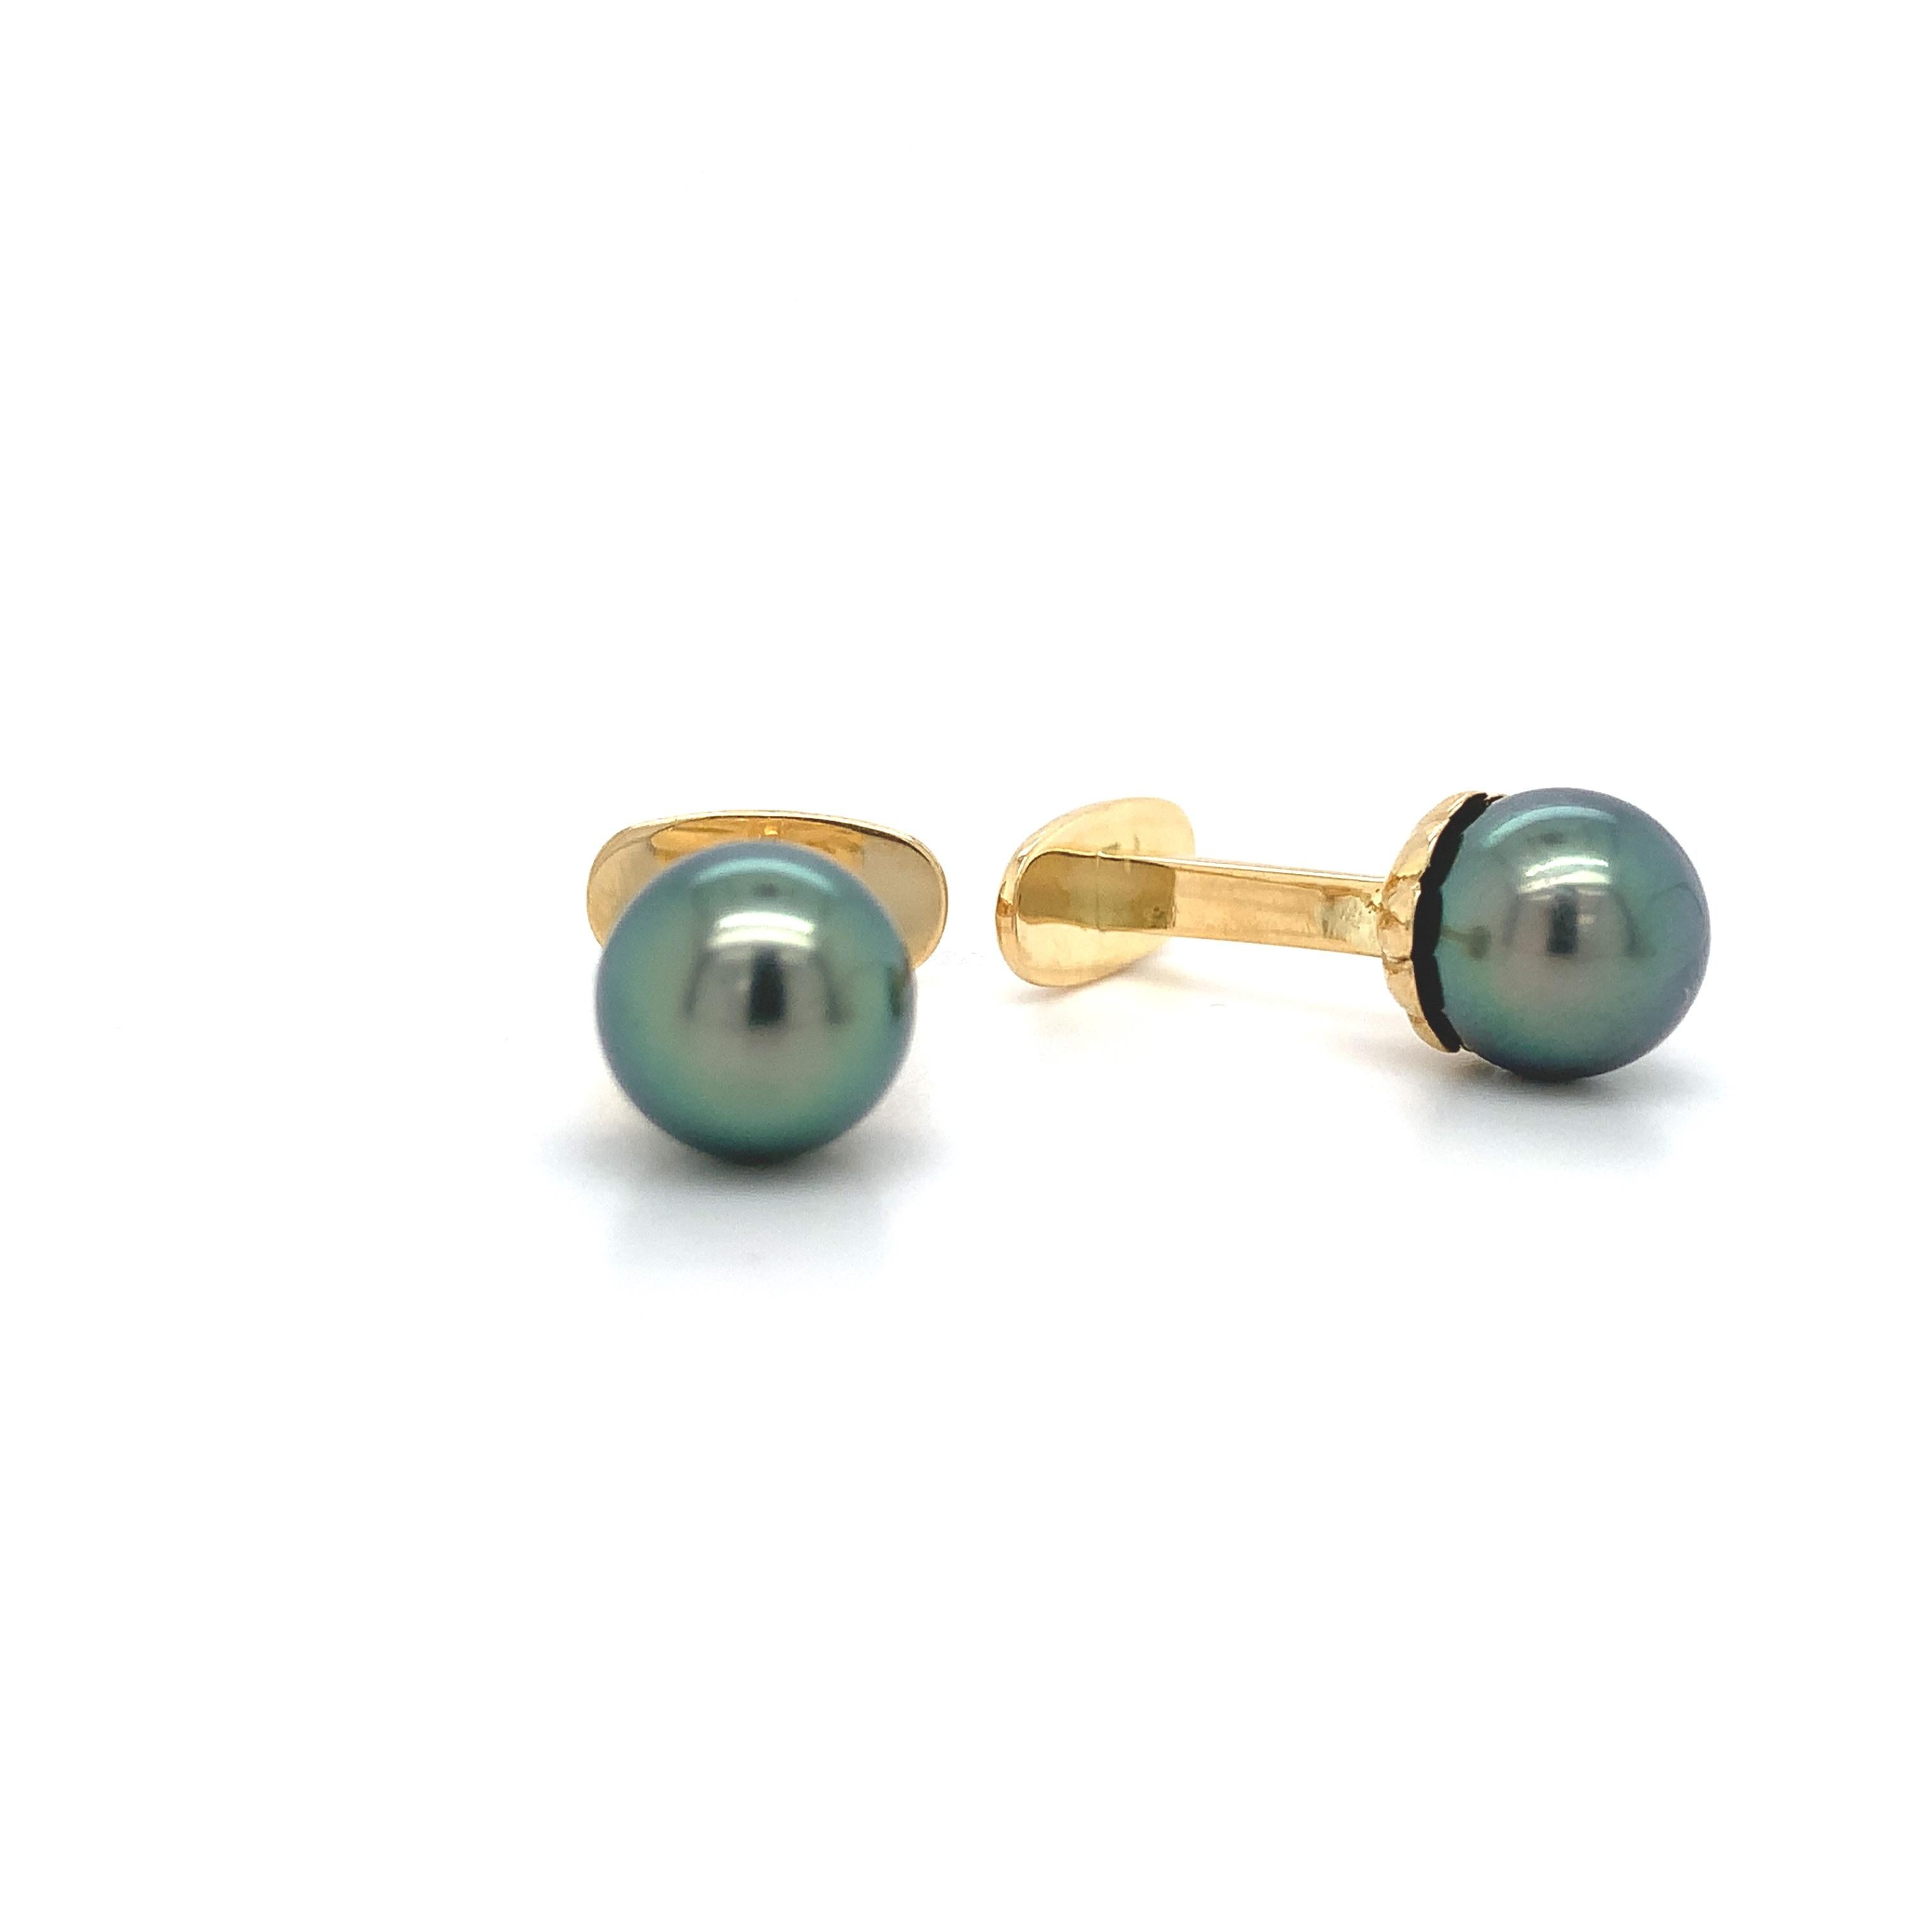 Paire de boutons de manchette en or jaune 14 carats, ornés de grosses perles de culture noires de Tahiti. Les perles sont entièrement rondes, ne présentent pas d'imperfections et ont une couleur naturelle de paon. Les perles mesurent 9 mm.  La paire